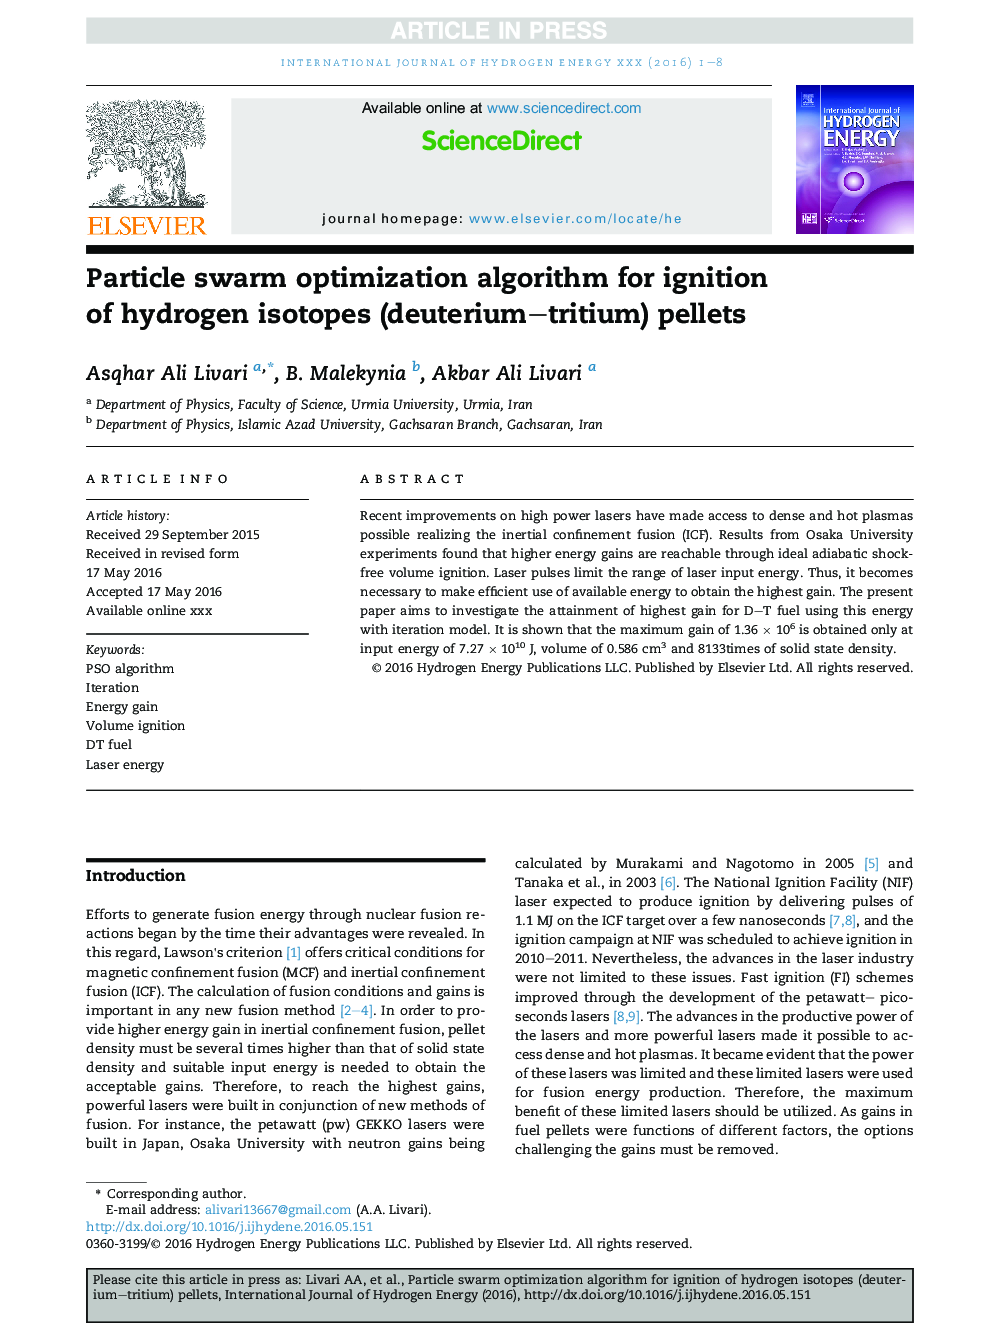 Particle swarm optimization algorithm for ignition of hydrogen isotopes (deuterium-tritium) pellets